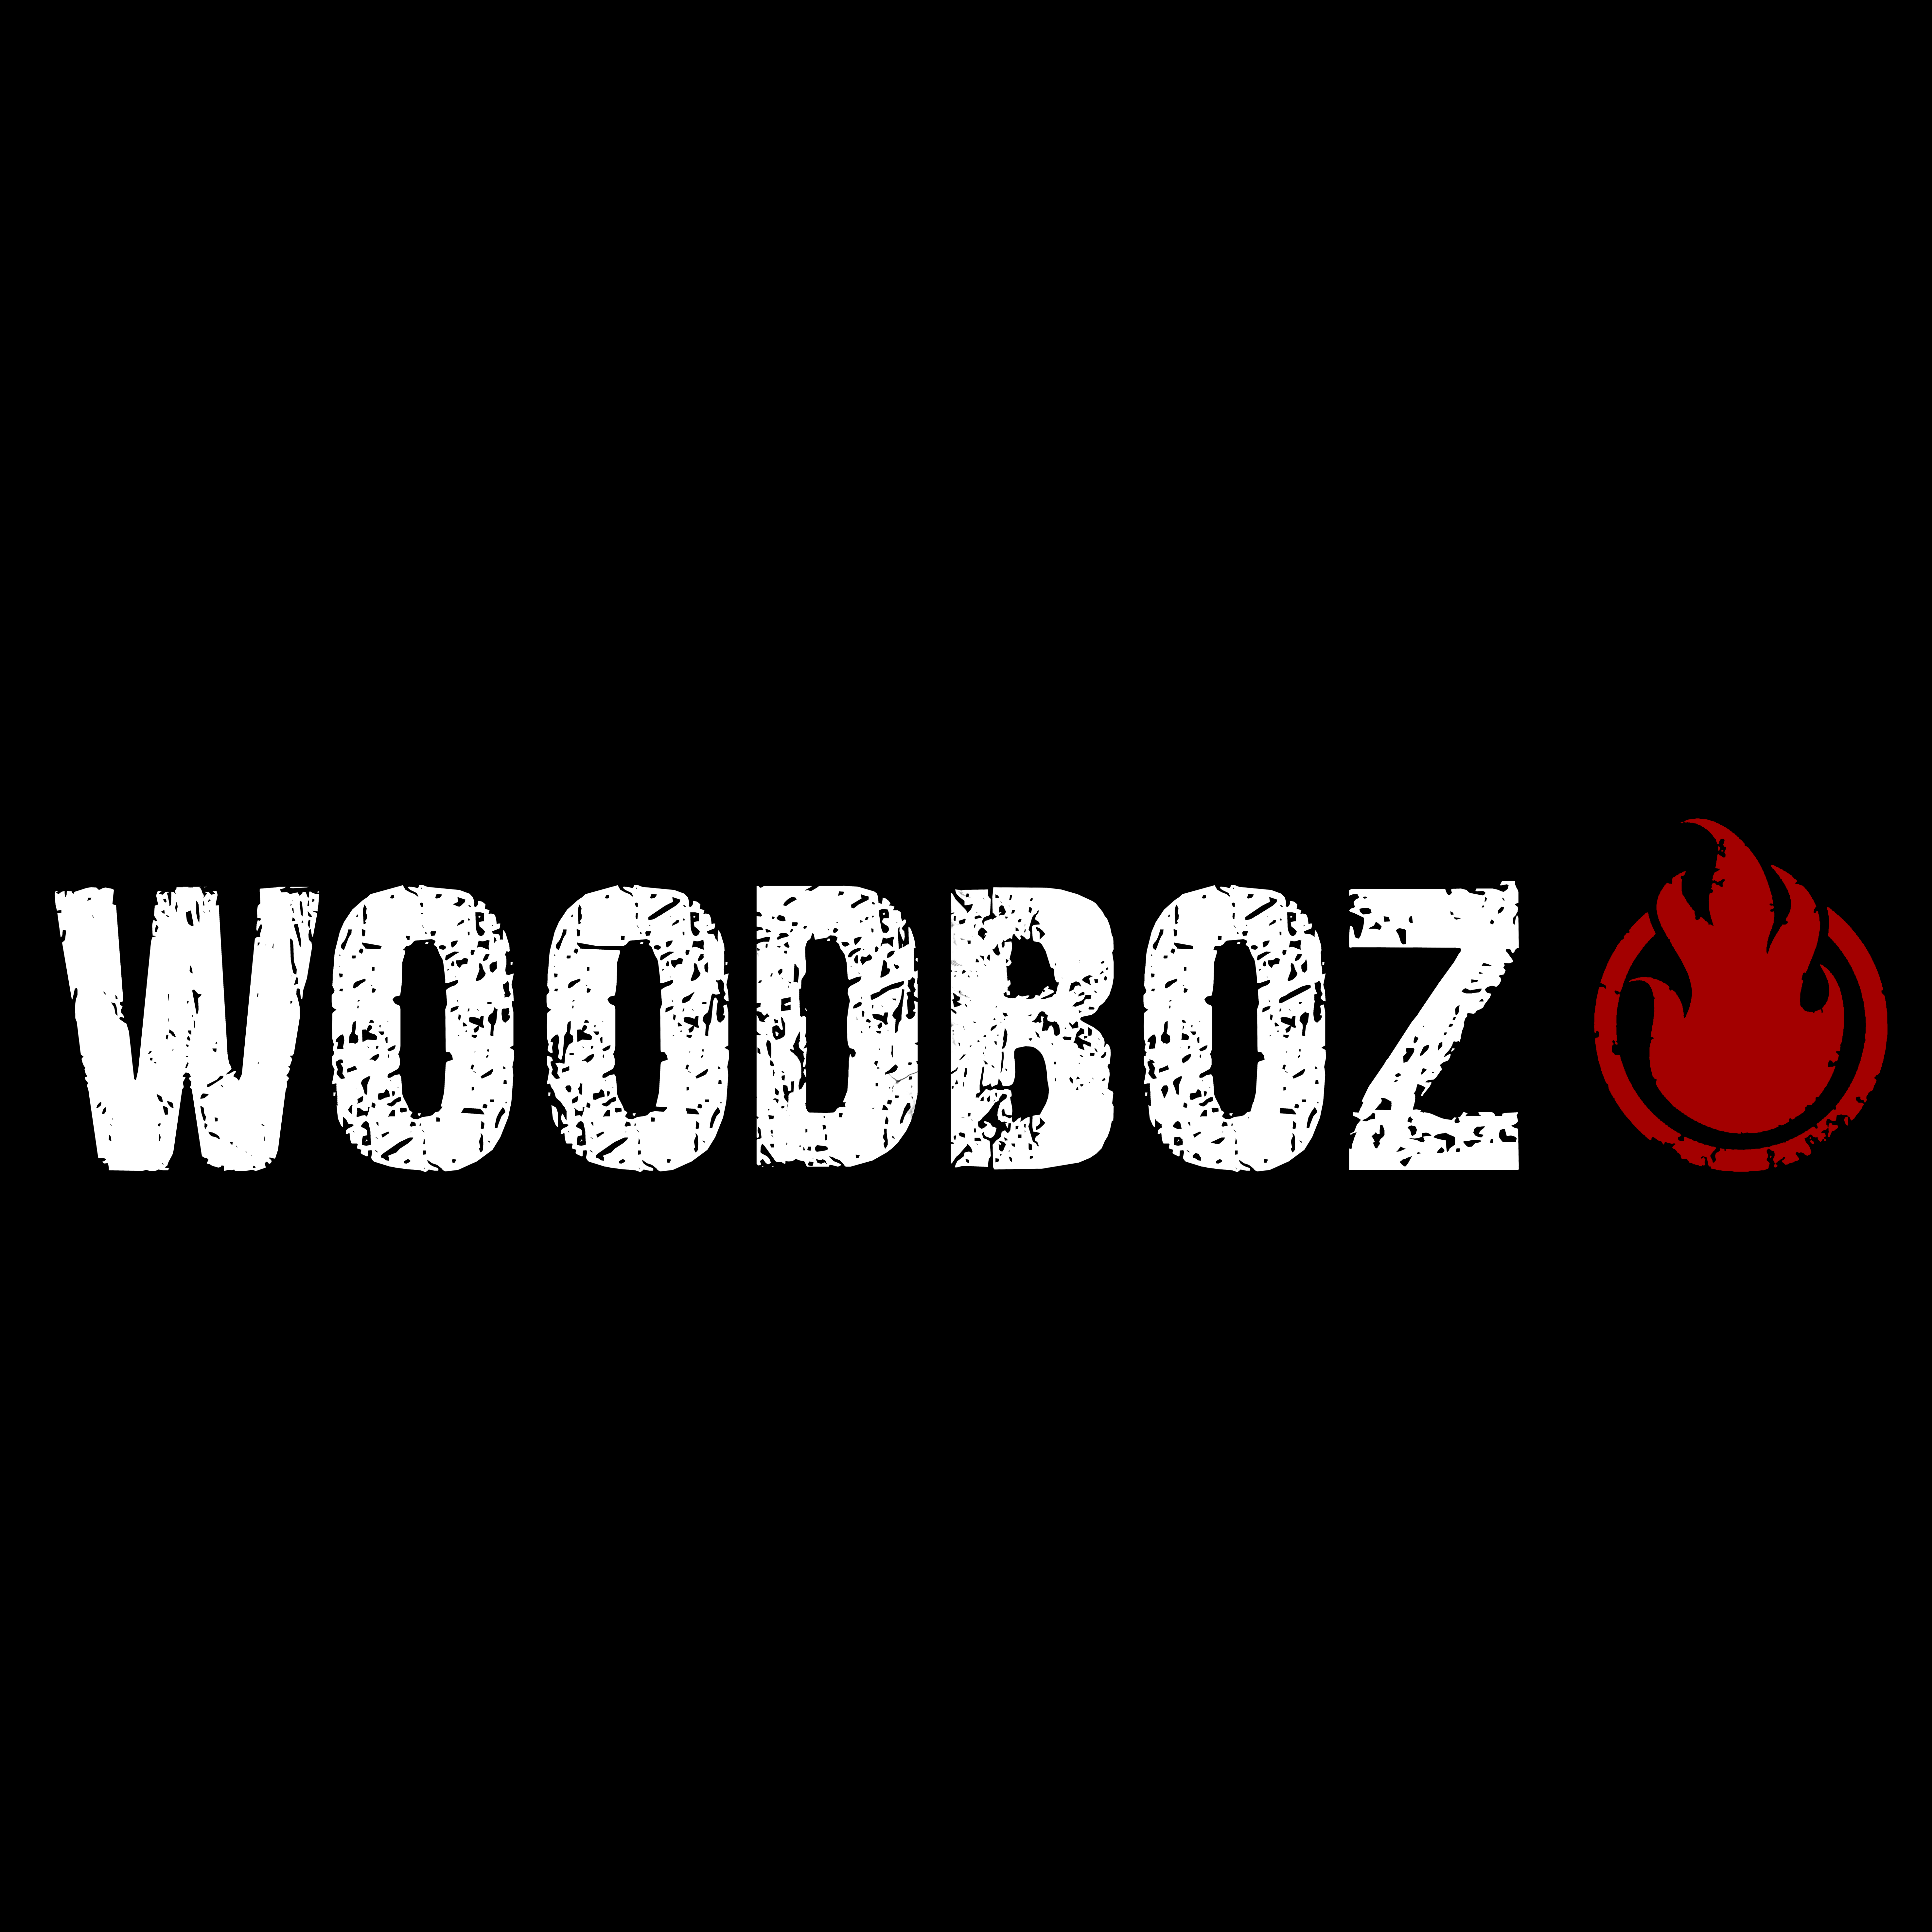 woodboz